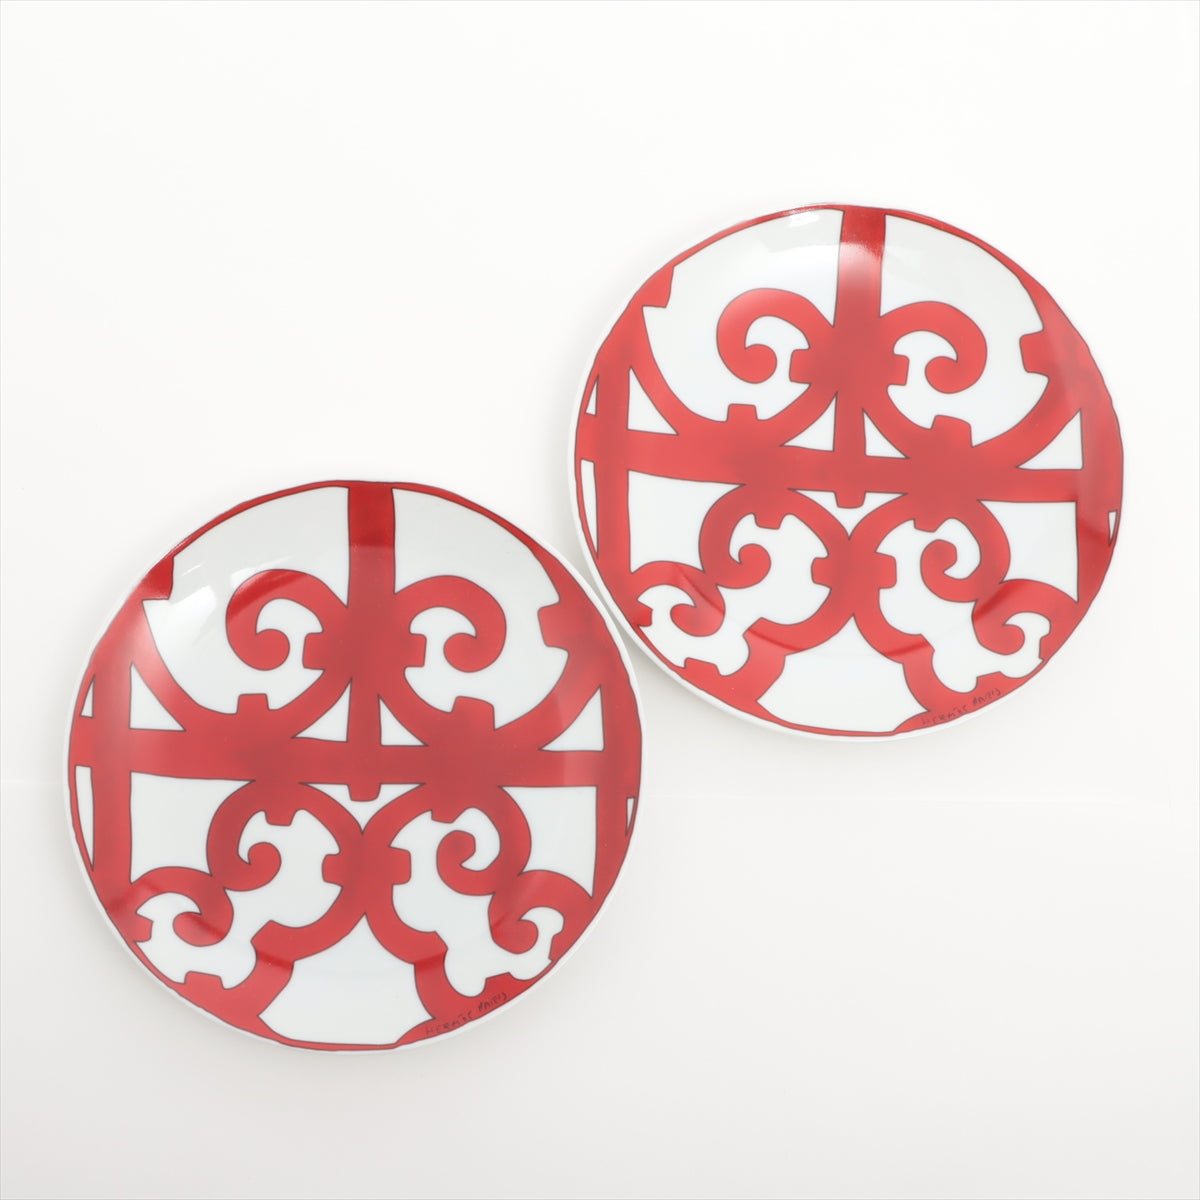 Hermès Guadalquivir Pair plates 17cm Ceramic Red x white